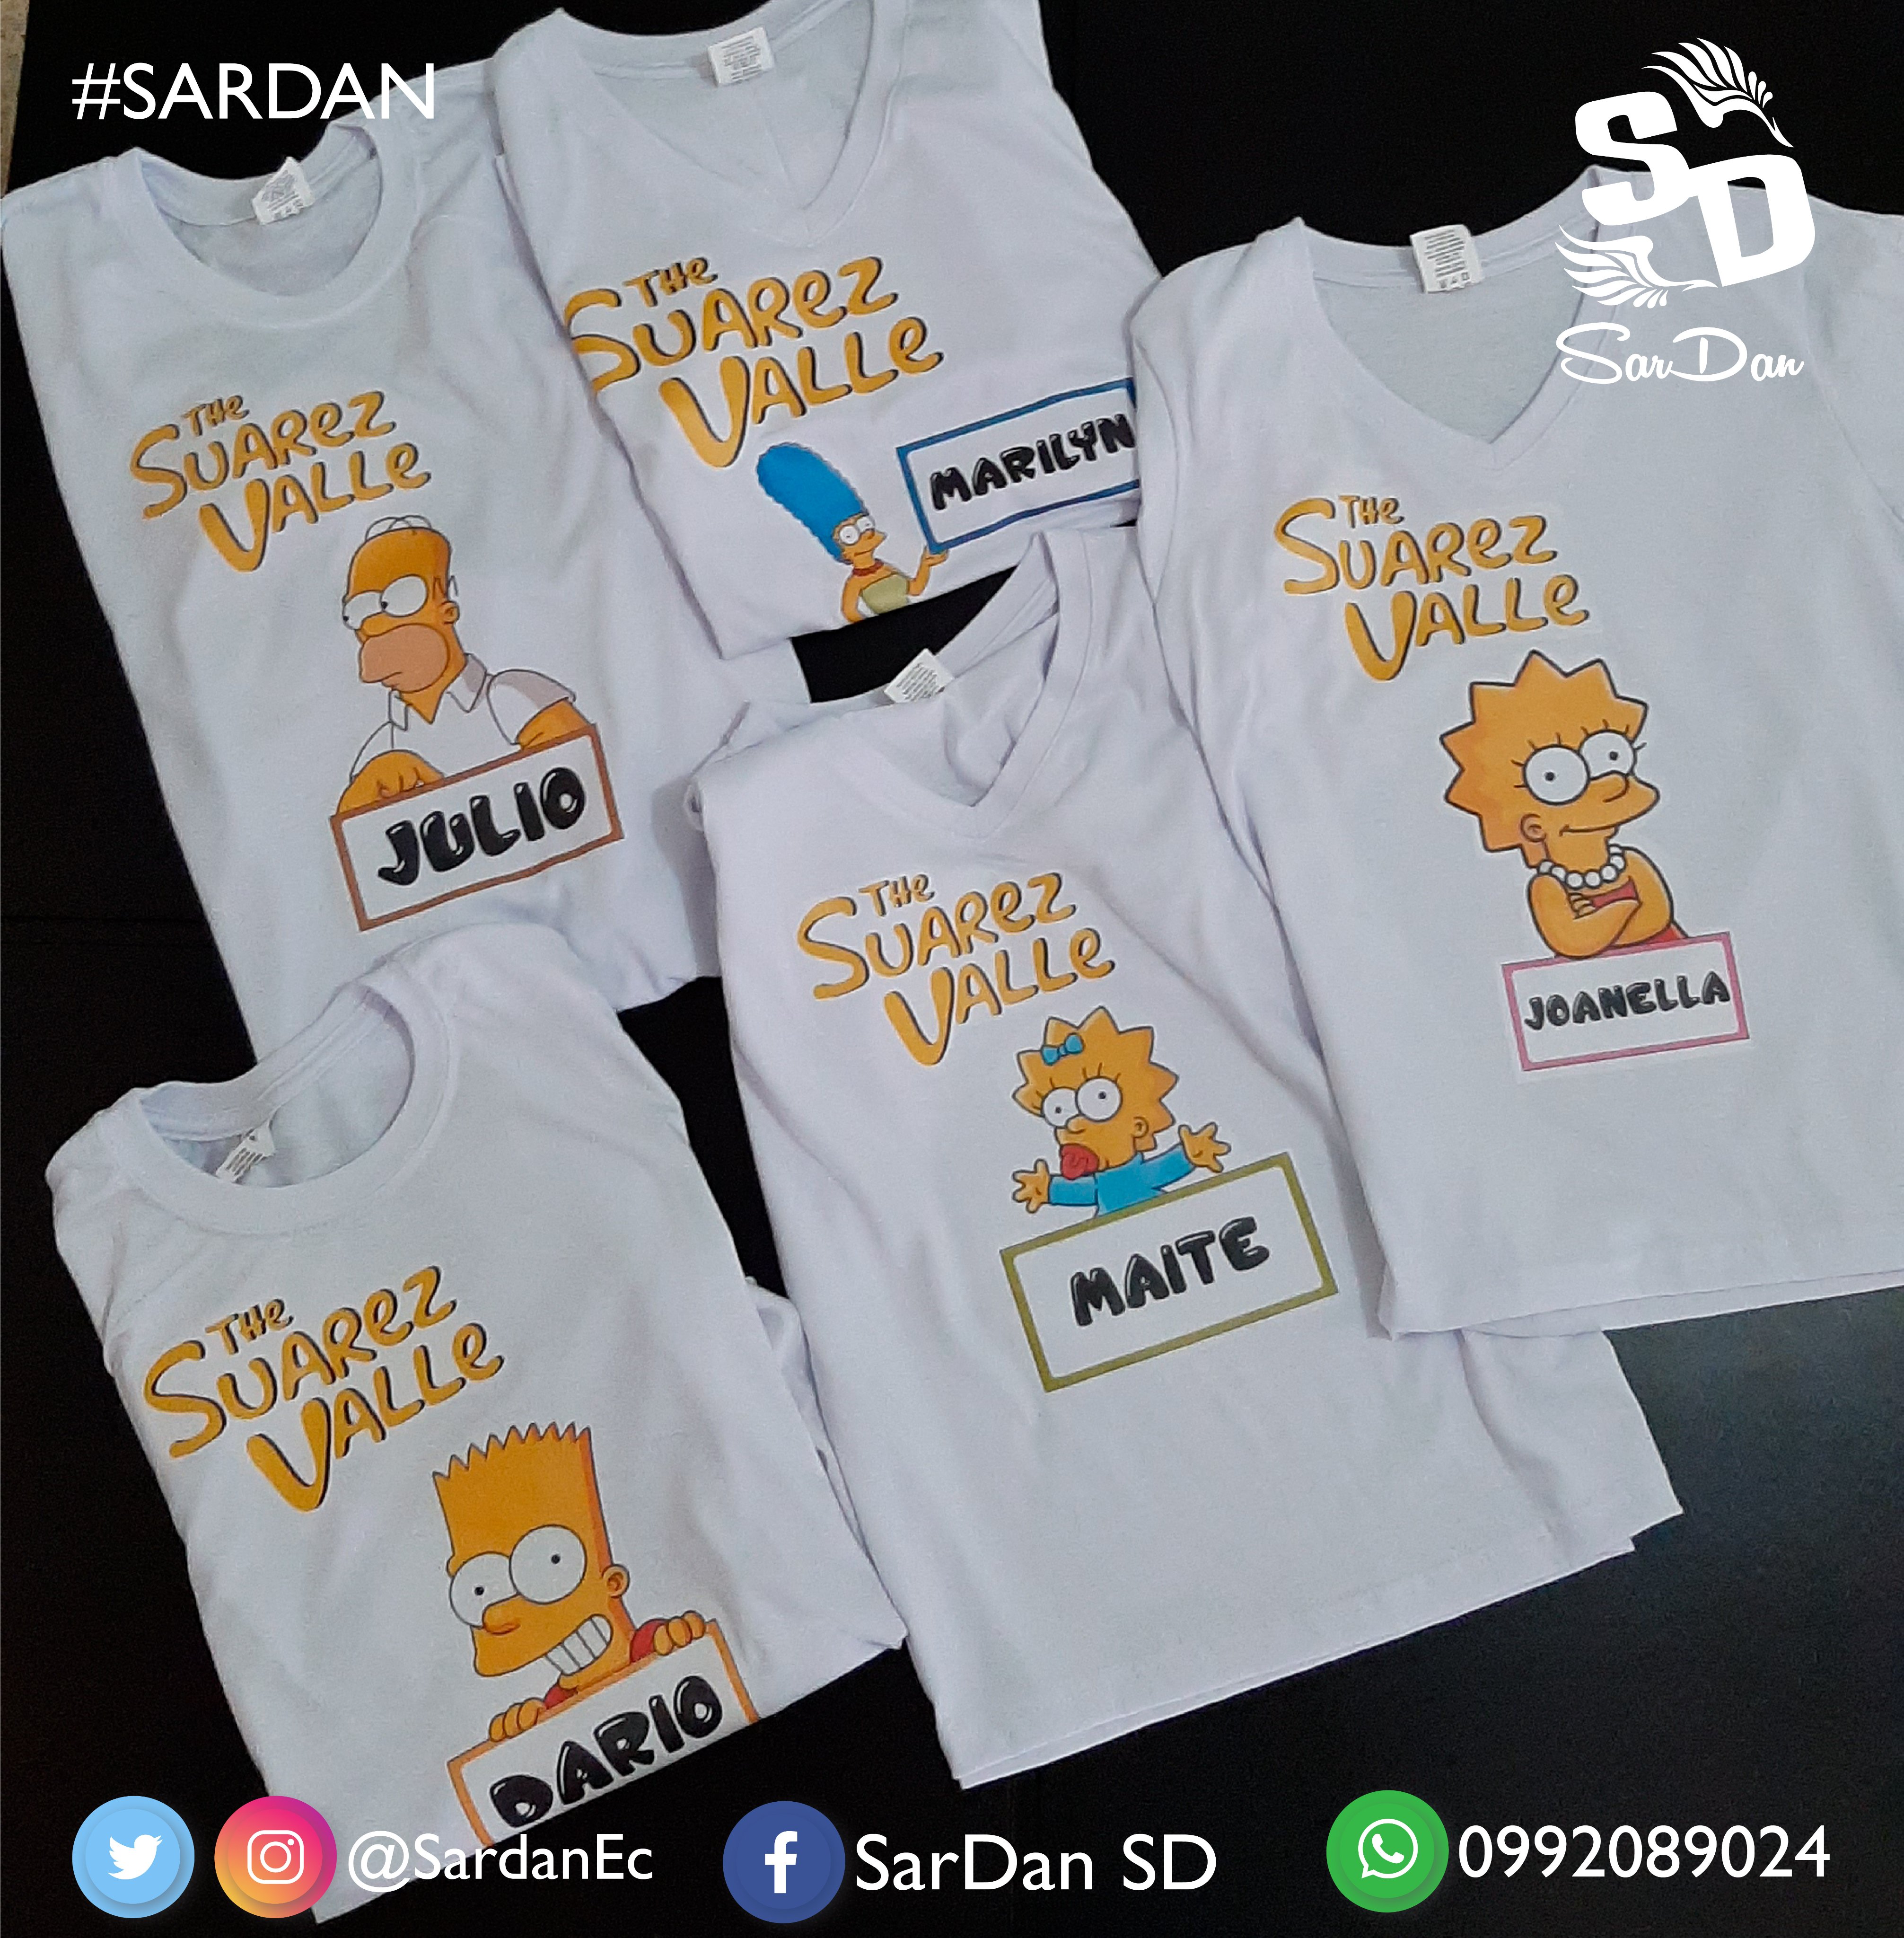 SarDan SD on Twitter: "THE SIMPSONS Camisetas Familiares Diseño 100% Personalizado Realizado en transfer pedido ;) 1 seman de anticipación #TheSimpsons https://t.co/5Igmcrc6sm" / Twitter